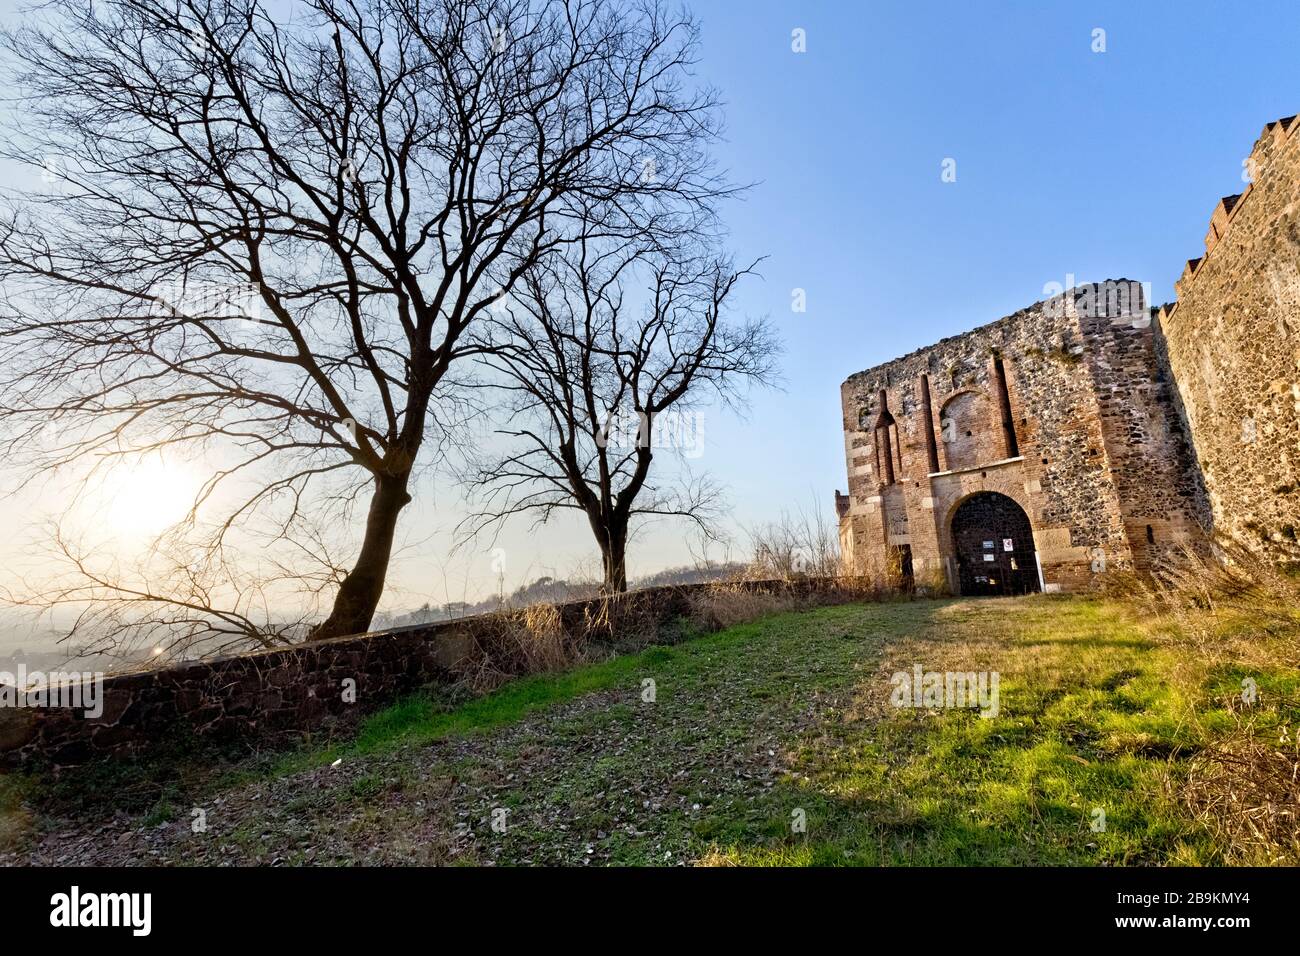 Le ravelin (entrée) du château de Maltraverso. Montebello Vicentino, province de Vicence, Vénétie, Italie, Europe. Banque D'Images